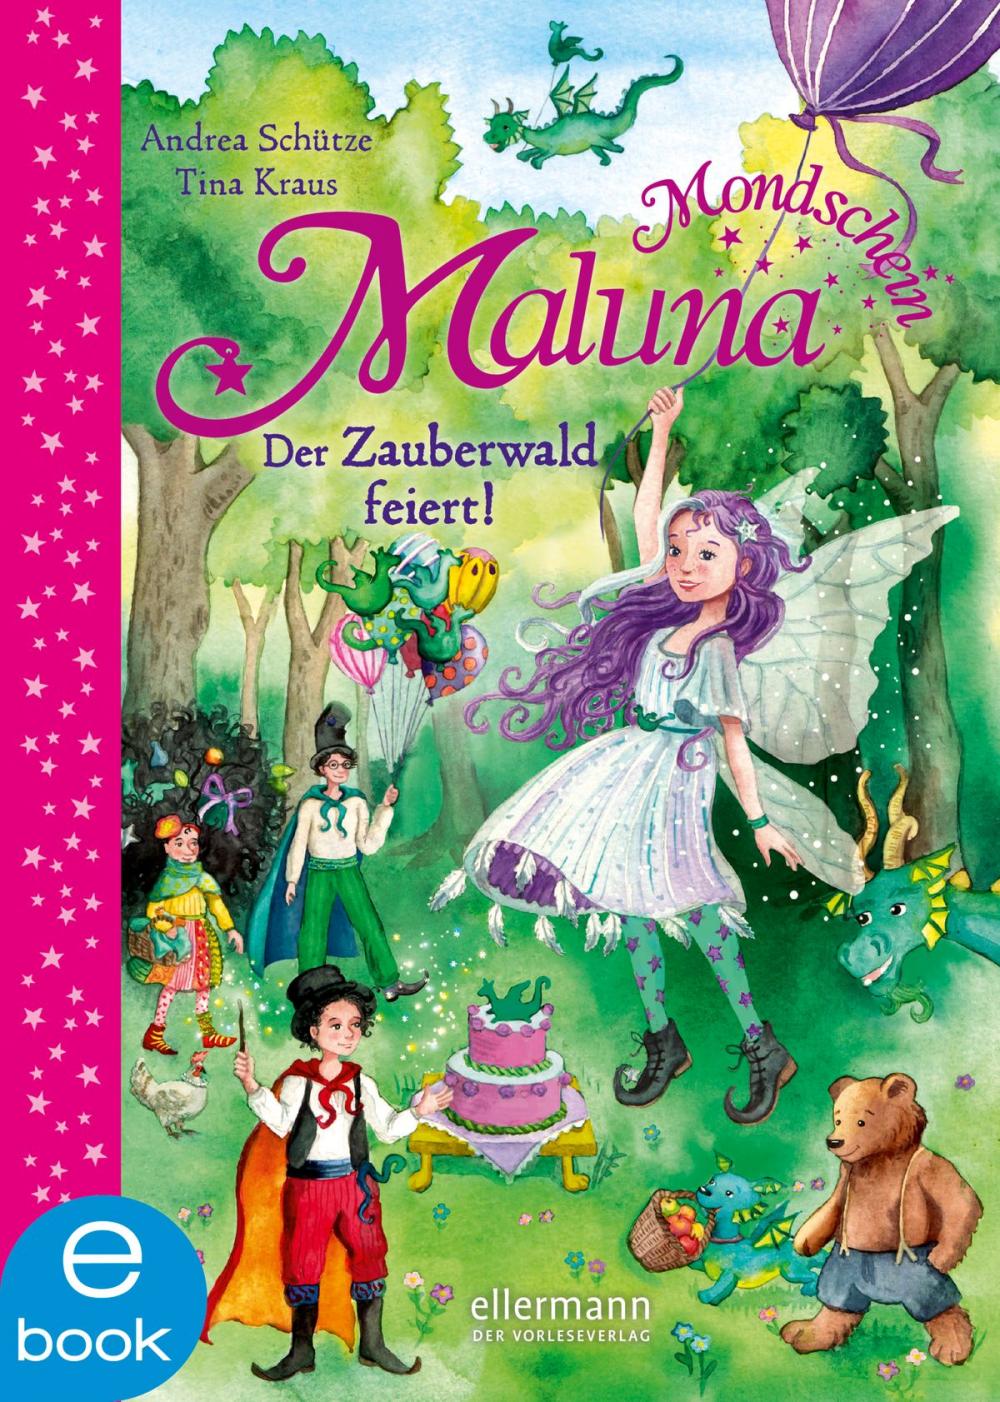 Big bigCover of Maluna Mondschein - Der Zauberwald feiert!